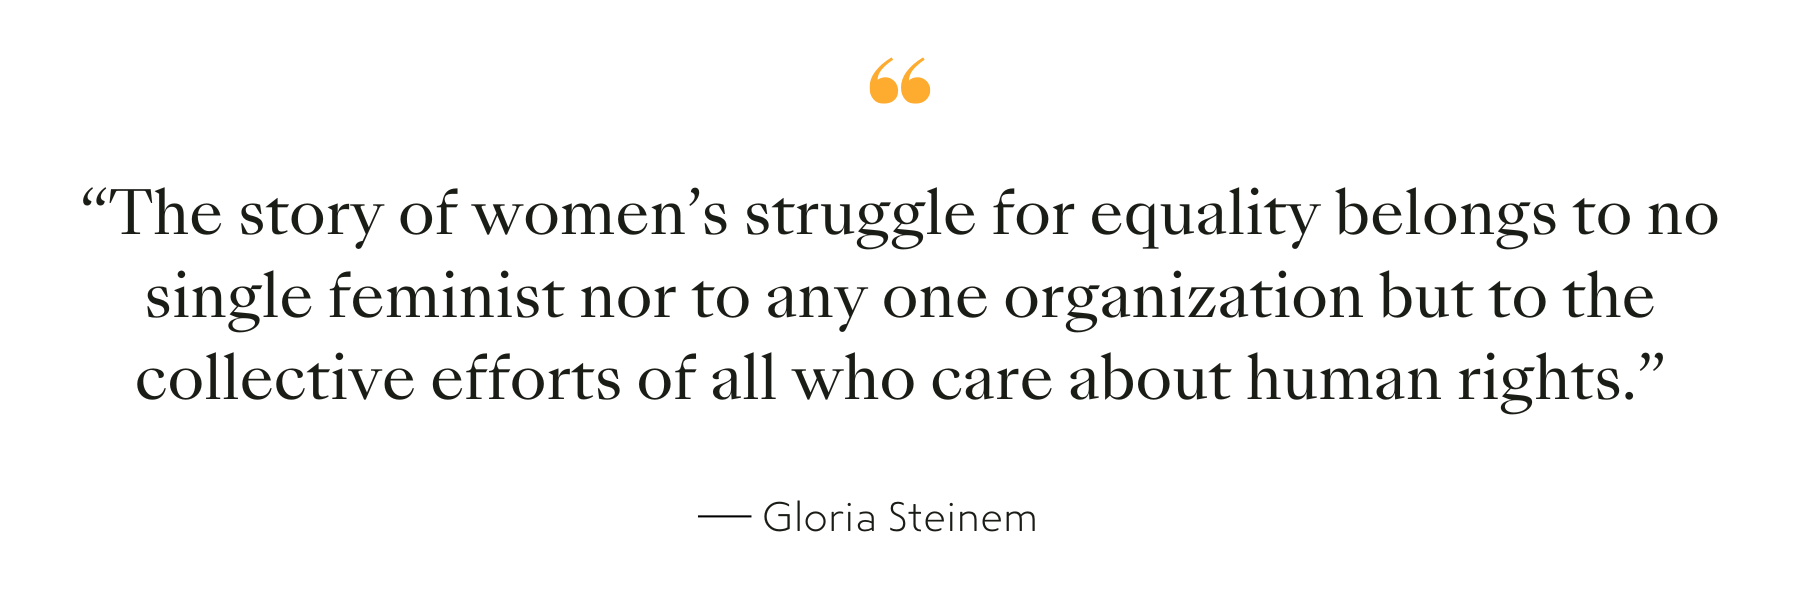 Zitat von Gloria Steinem, Schriftstellerin, Dozentin, politische Aktivistin und feministische Organisatorin.